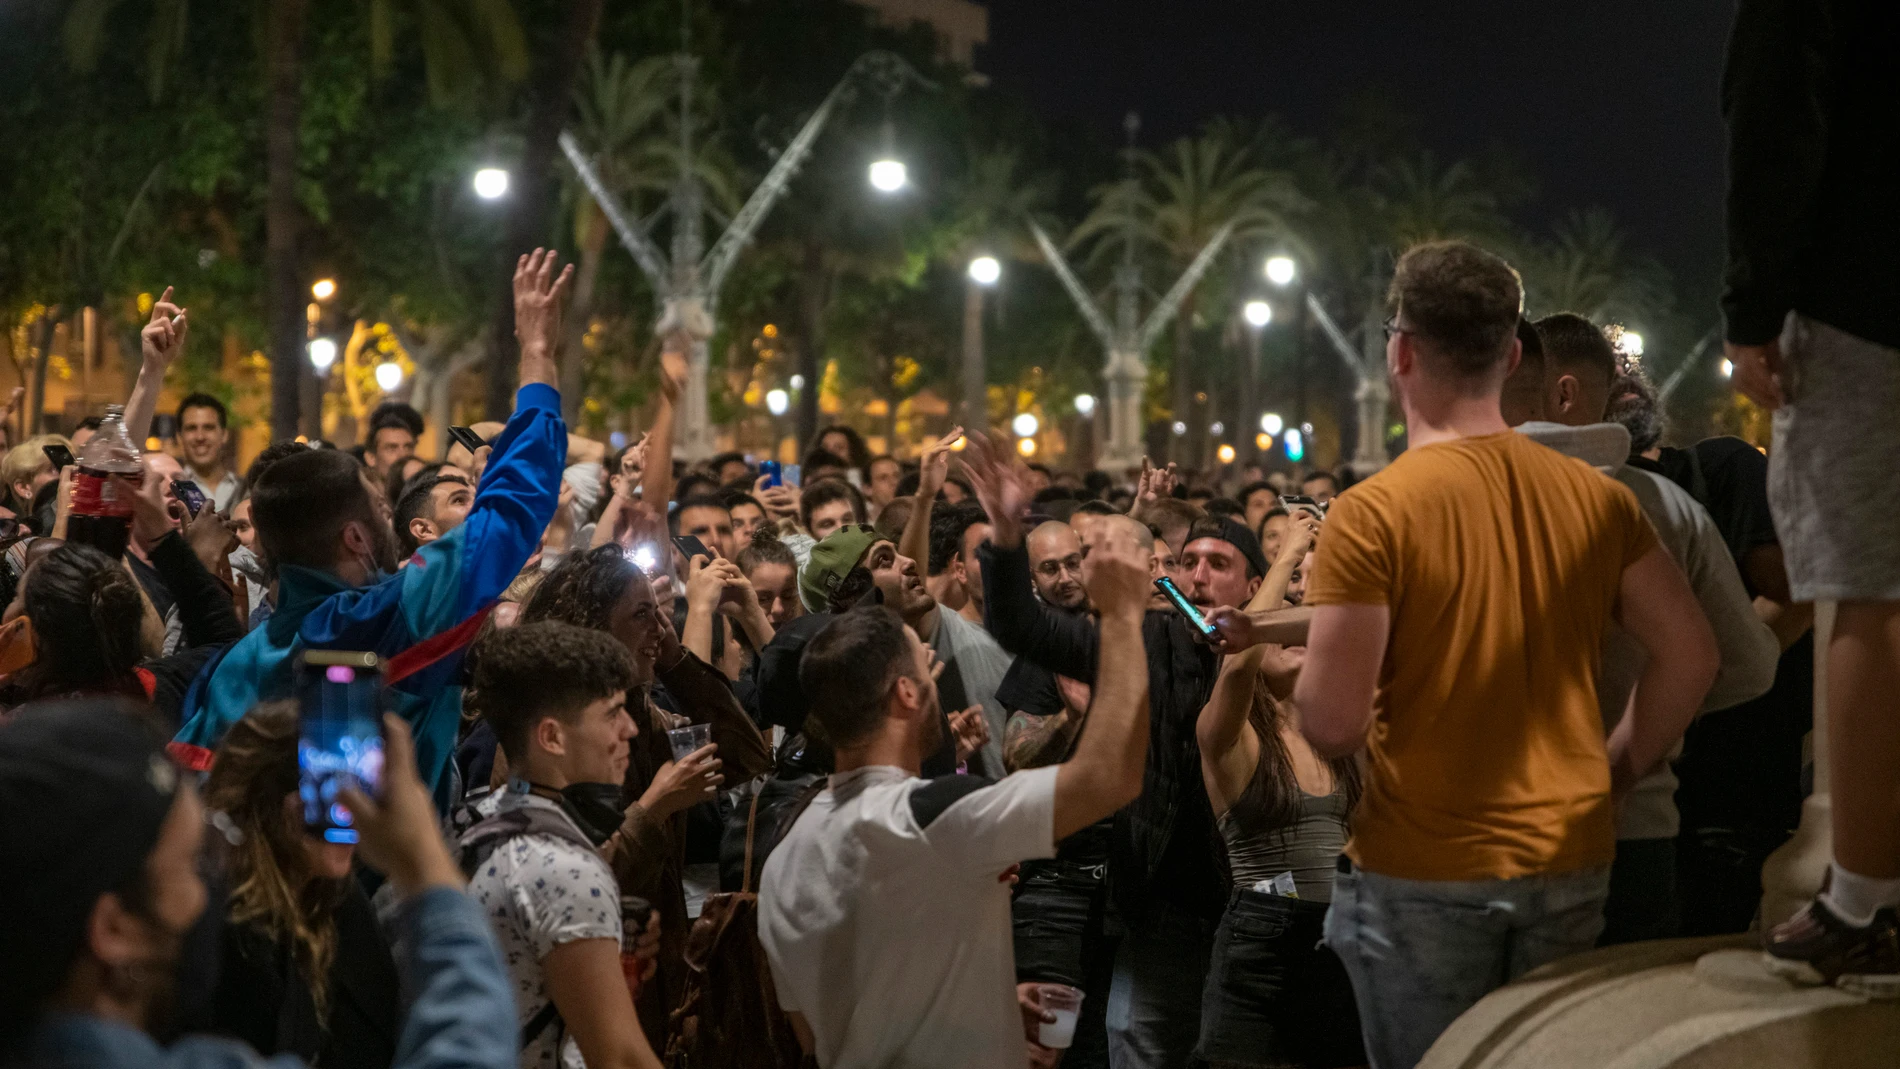 Varios jóvenes reunidos en ambiente festivo en una calle de Barcelona el sábado noche